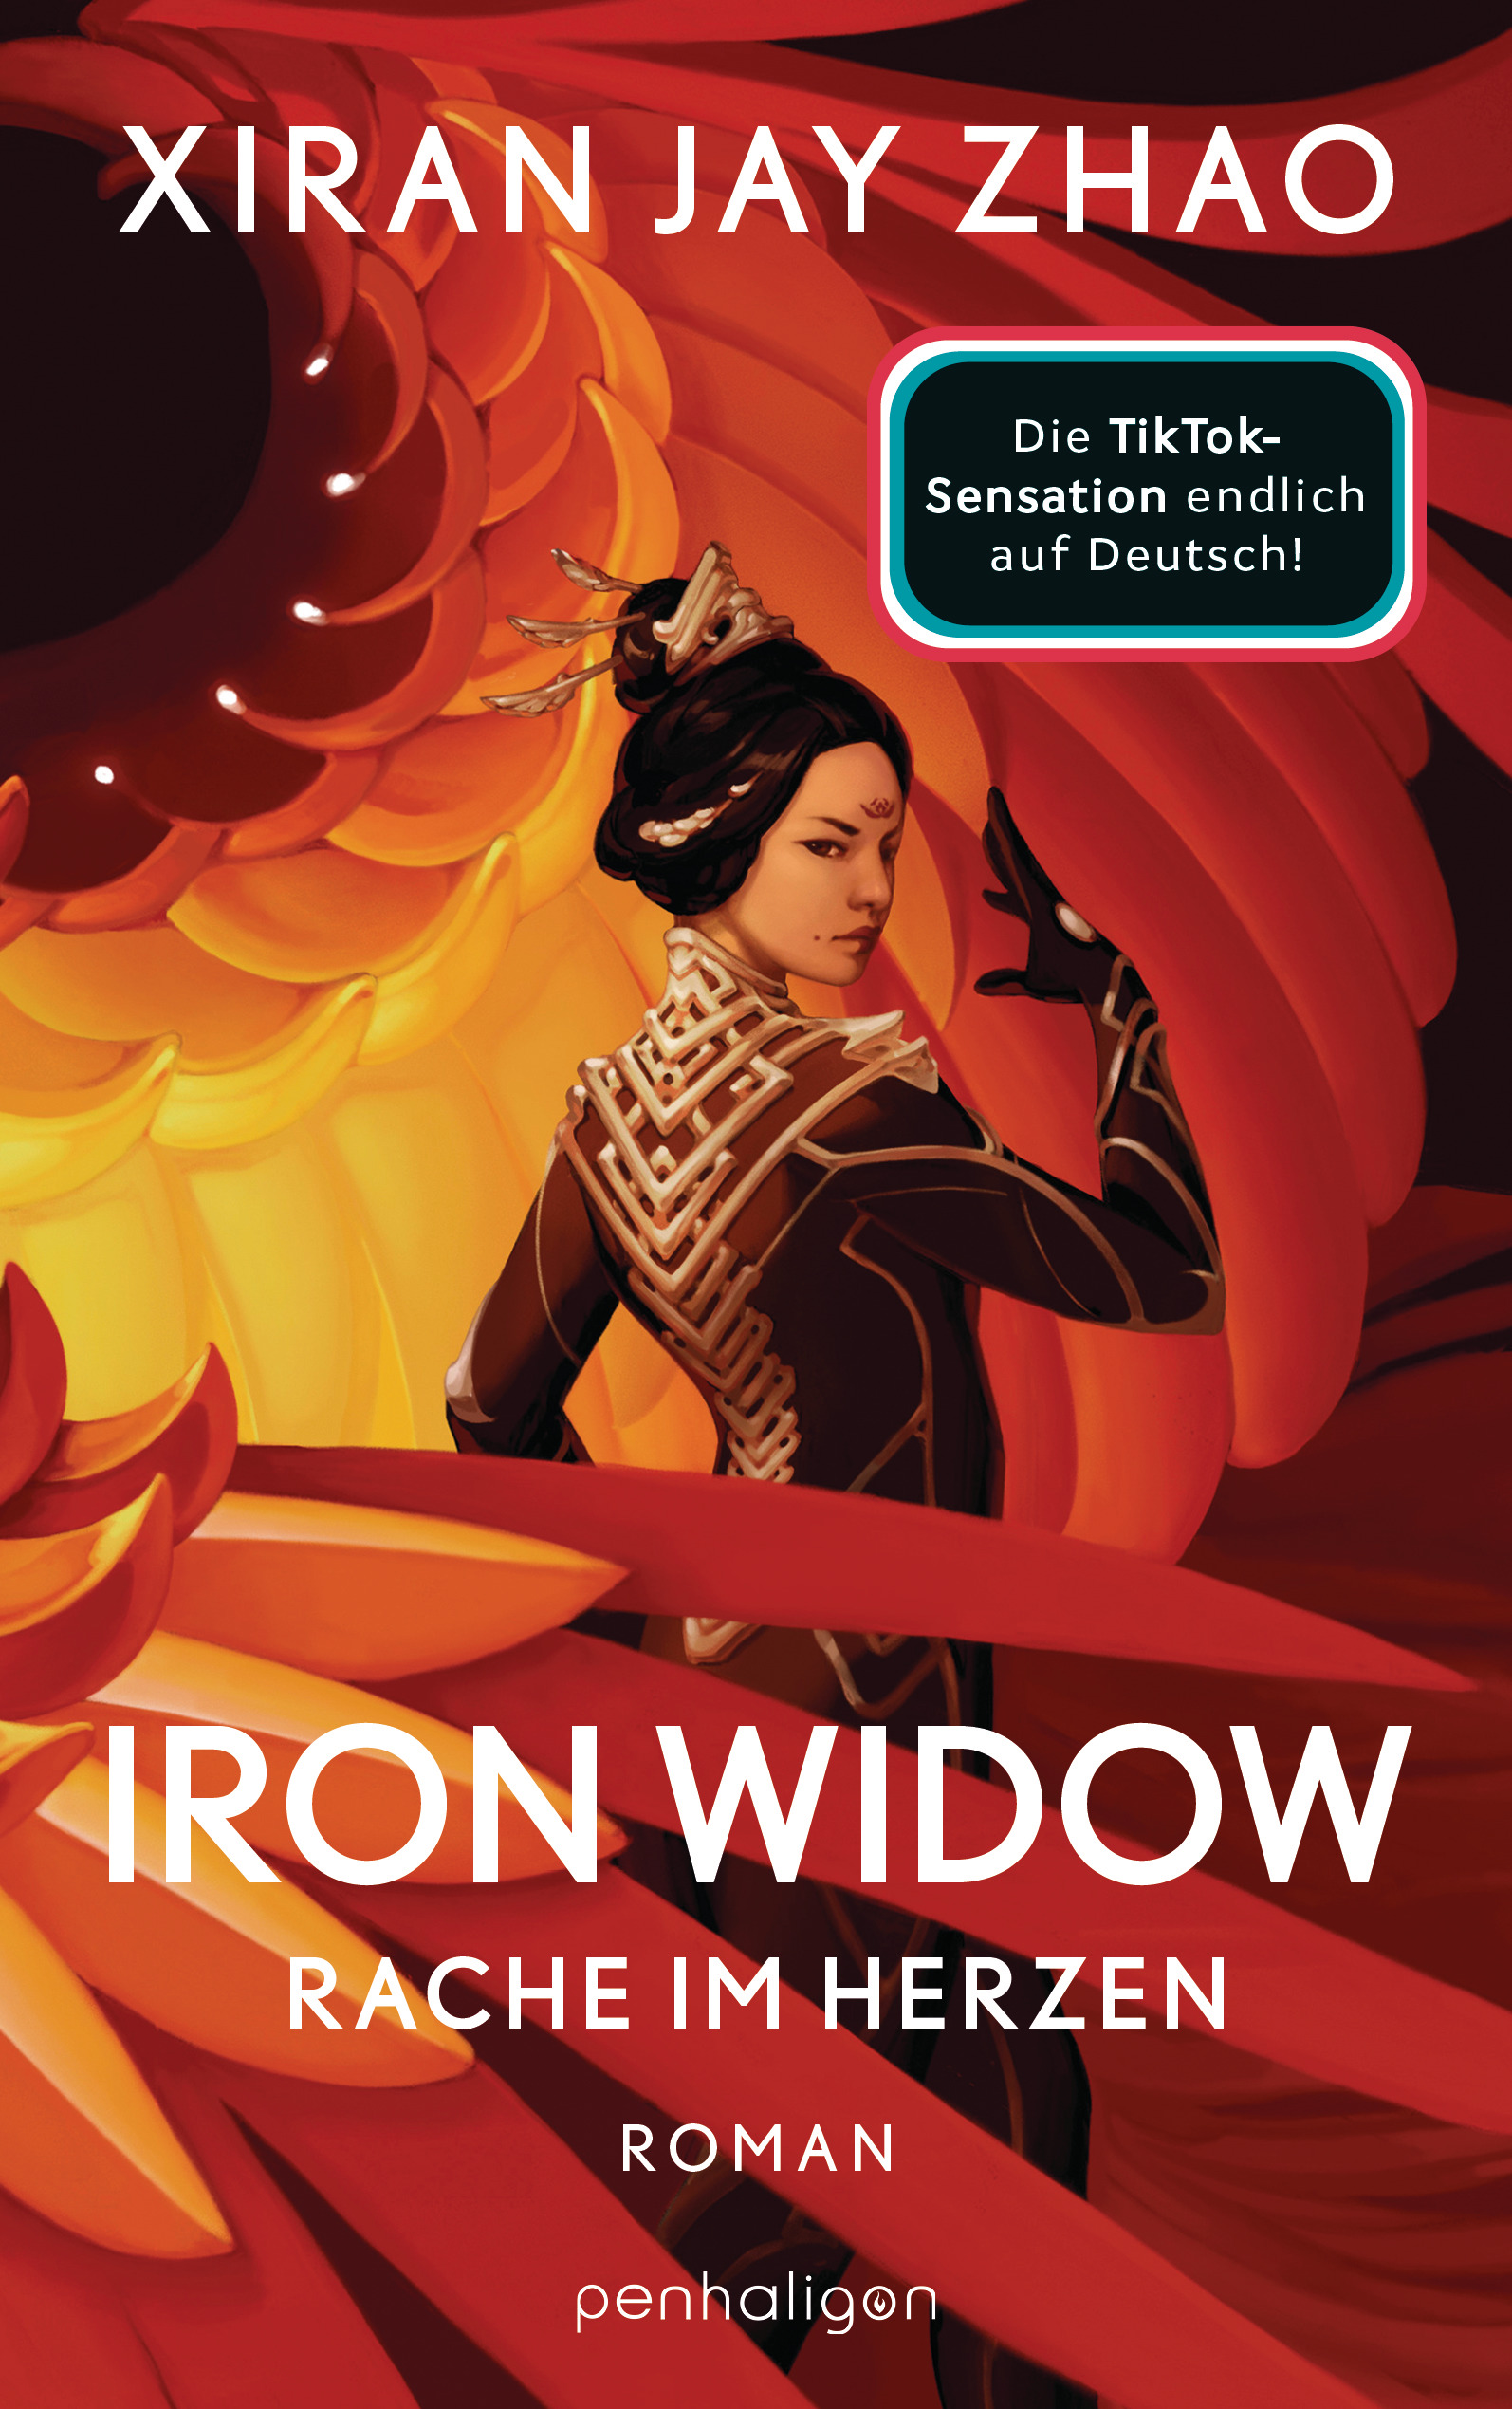 Bücherblog. Neuerscheinungen. Buchcover. Iron Widow - Rache im Herzen (Band 1) von Xiran Jay Zhao. Fantasy. penhaligon.